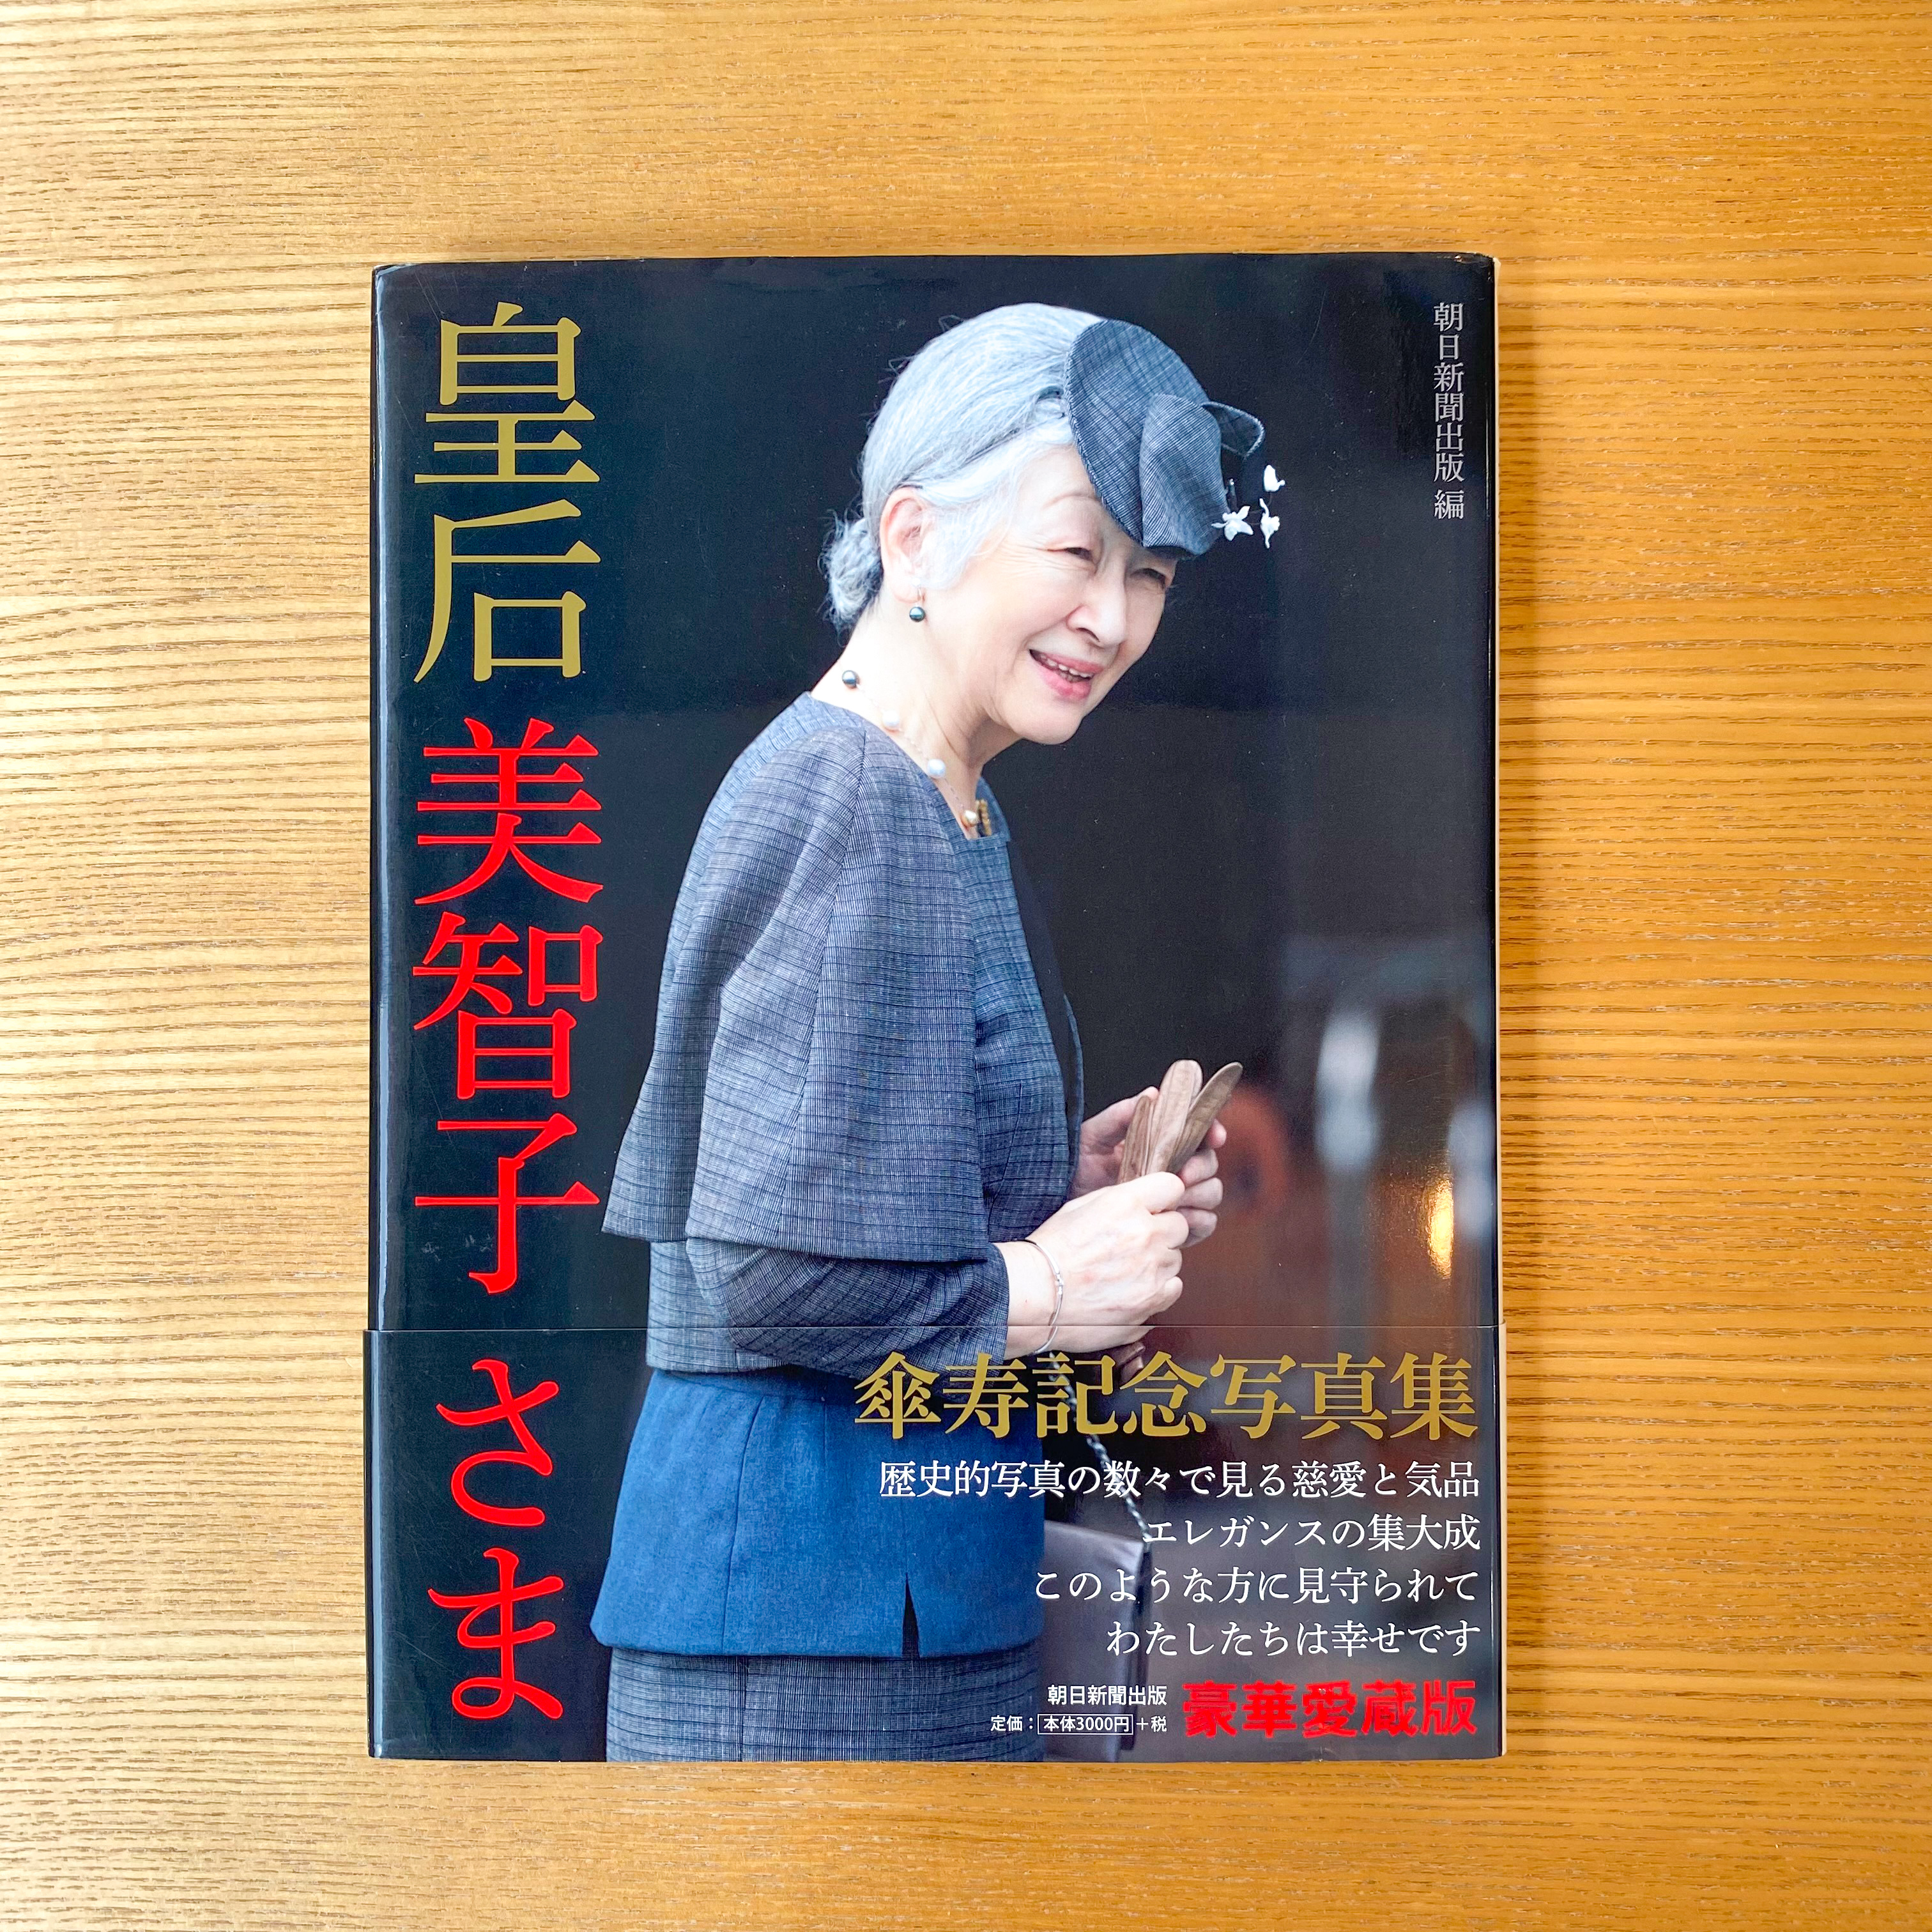 皇后美智子さま 傘寿記念写真集